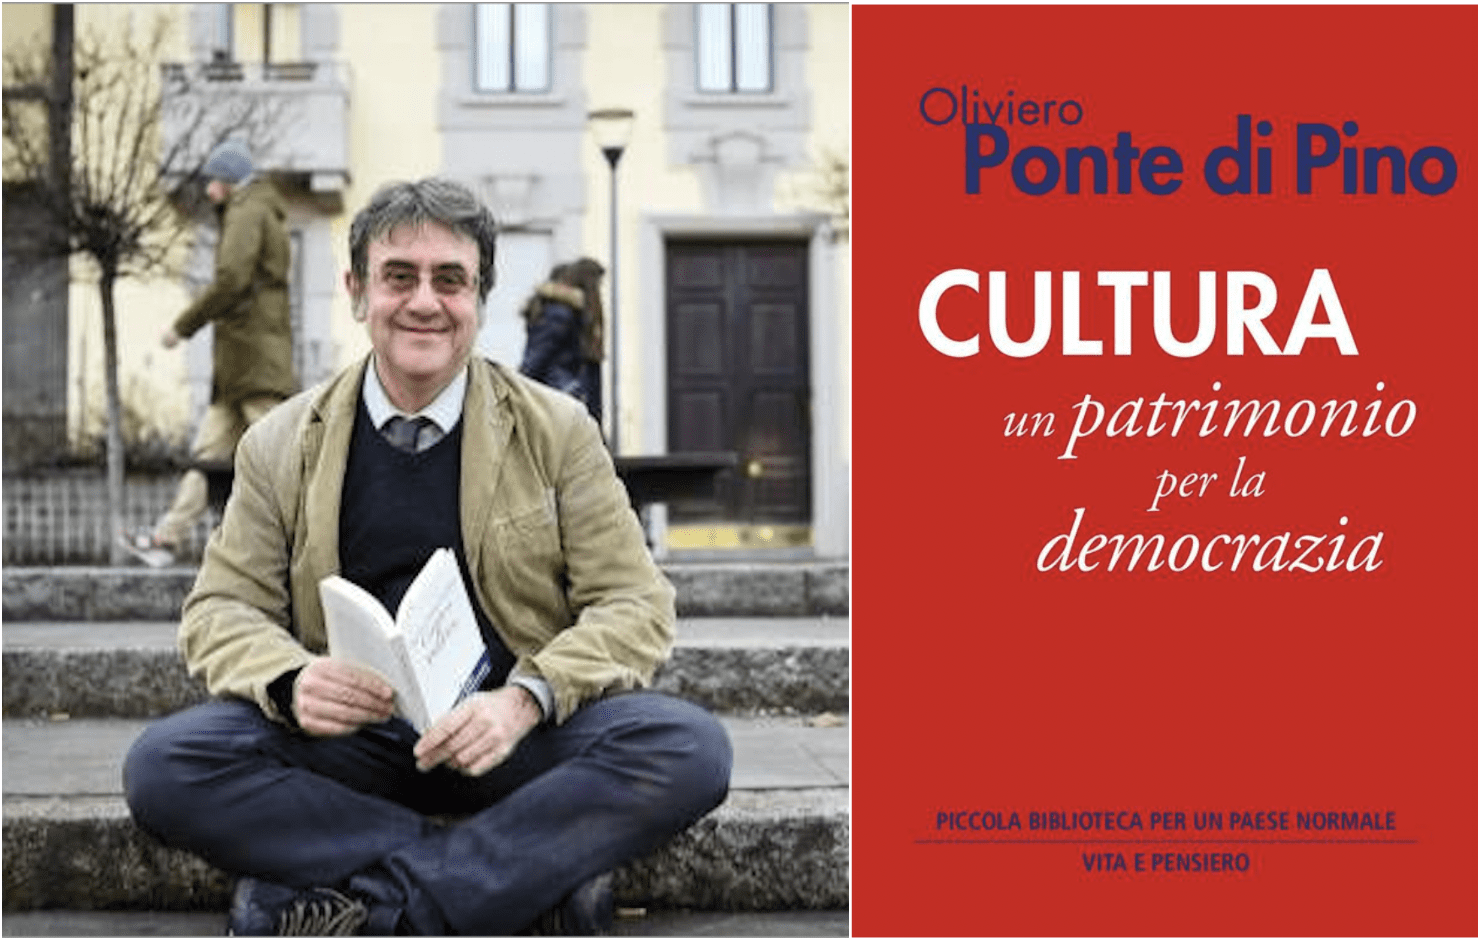 Oliviero Ponte di Pino - Cultura - Un patrimonio per la democrazia - Editore Vita e pensiero - Costituzione italiana - Digitale - Media